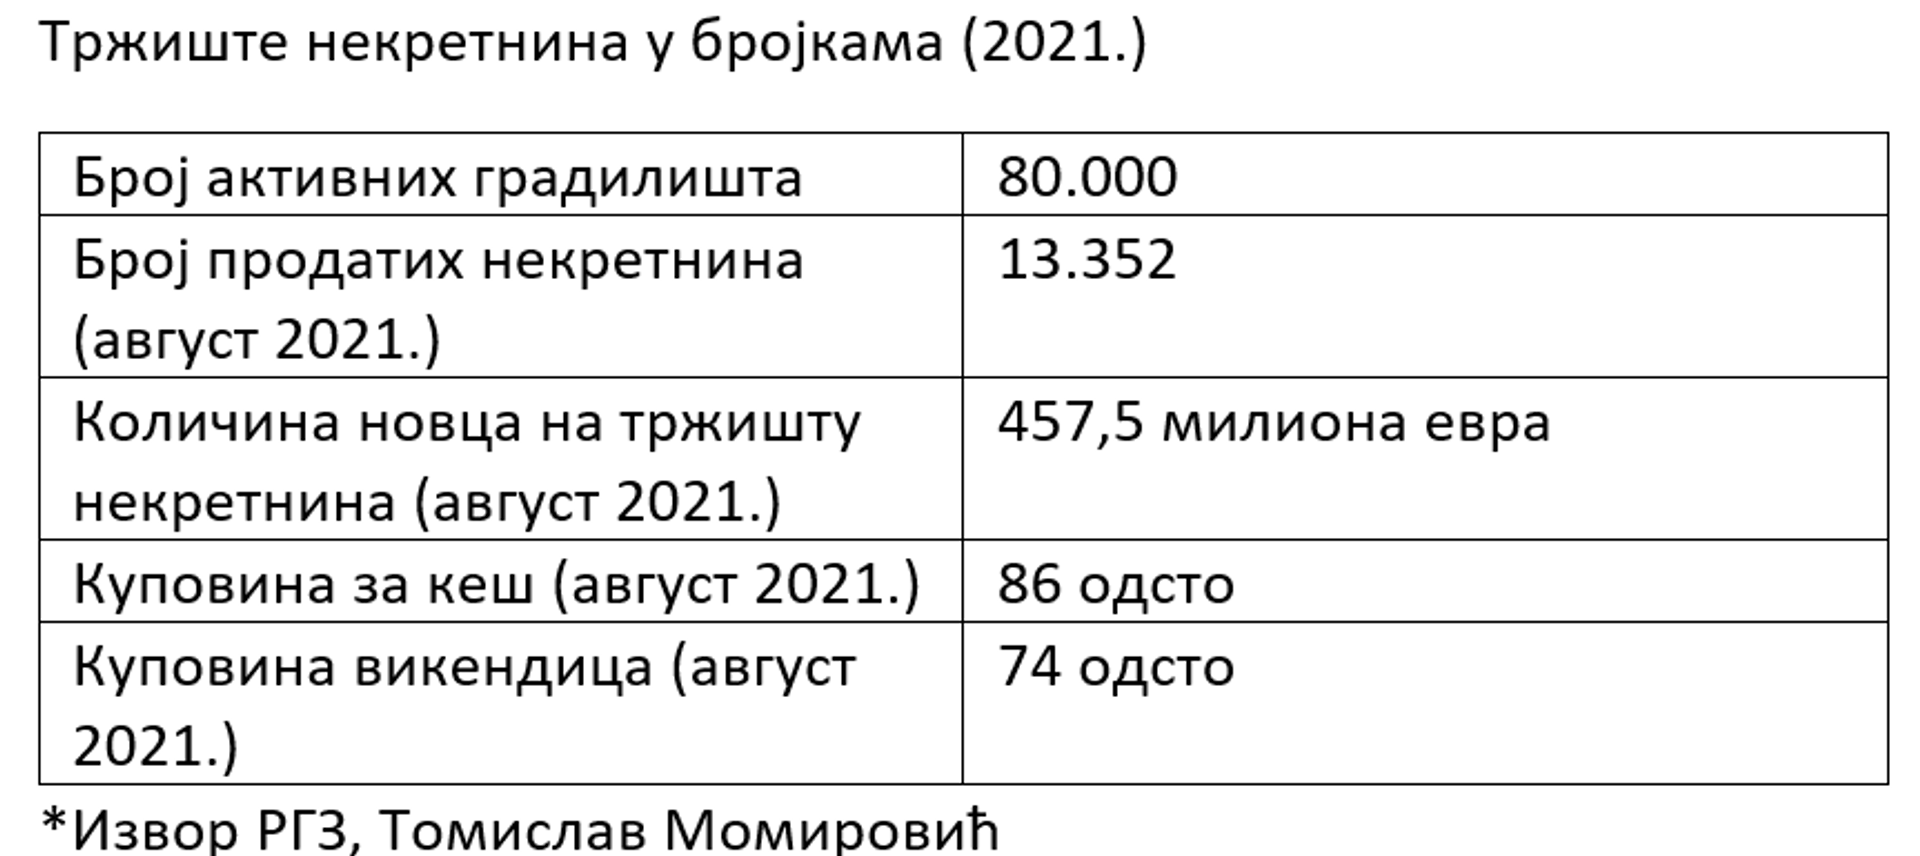 Tabela, tržište nekretnina 2021. - Sputnik Srbija, 1920, 25.09.2021